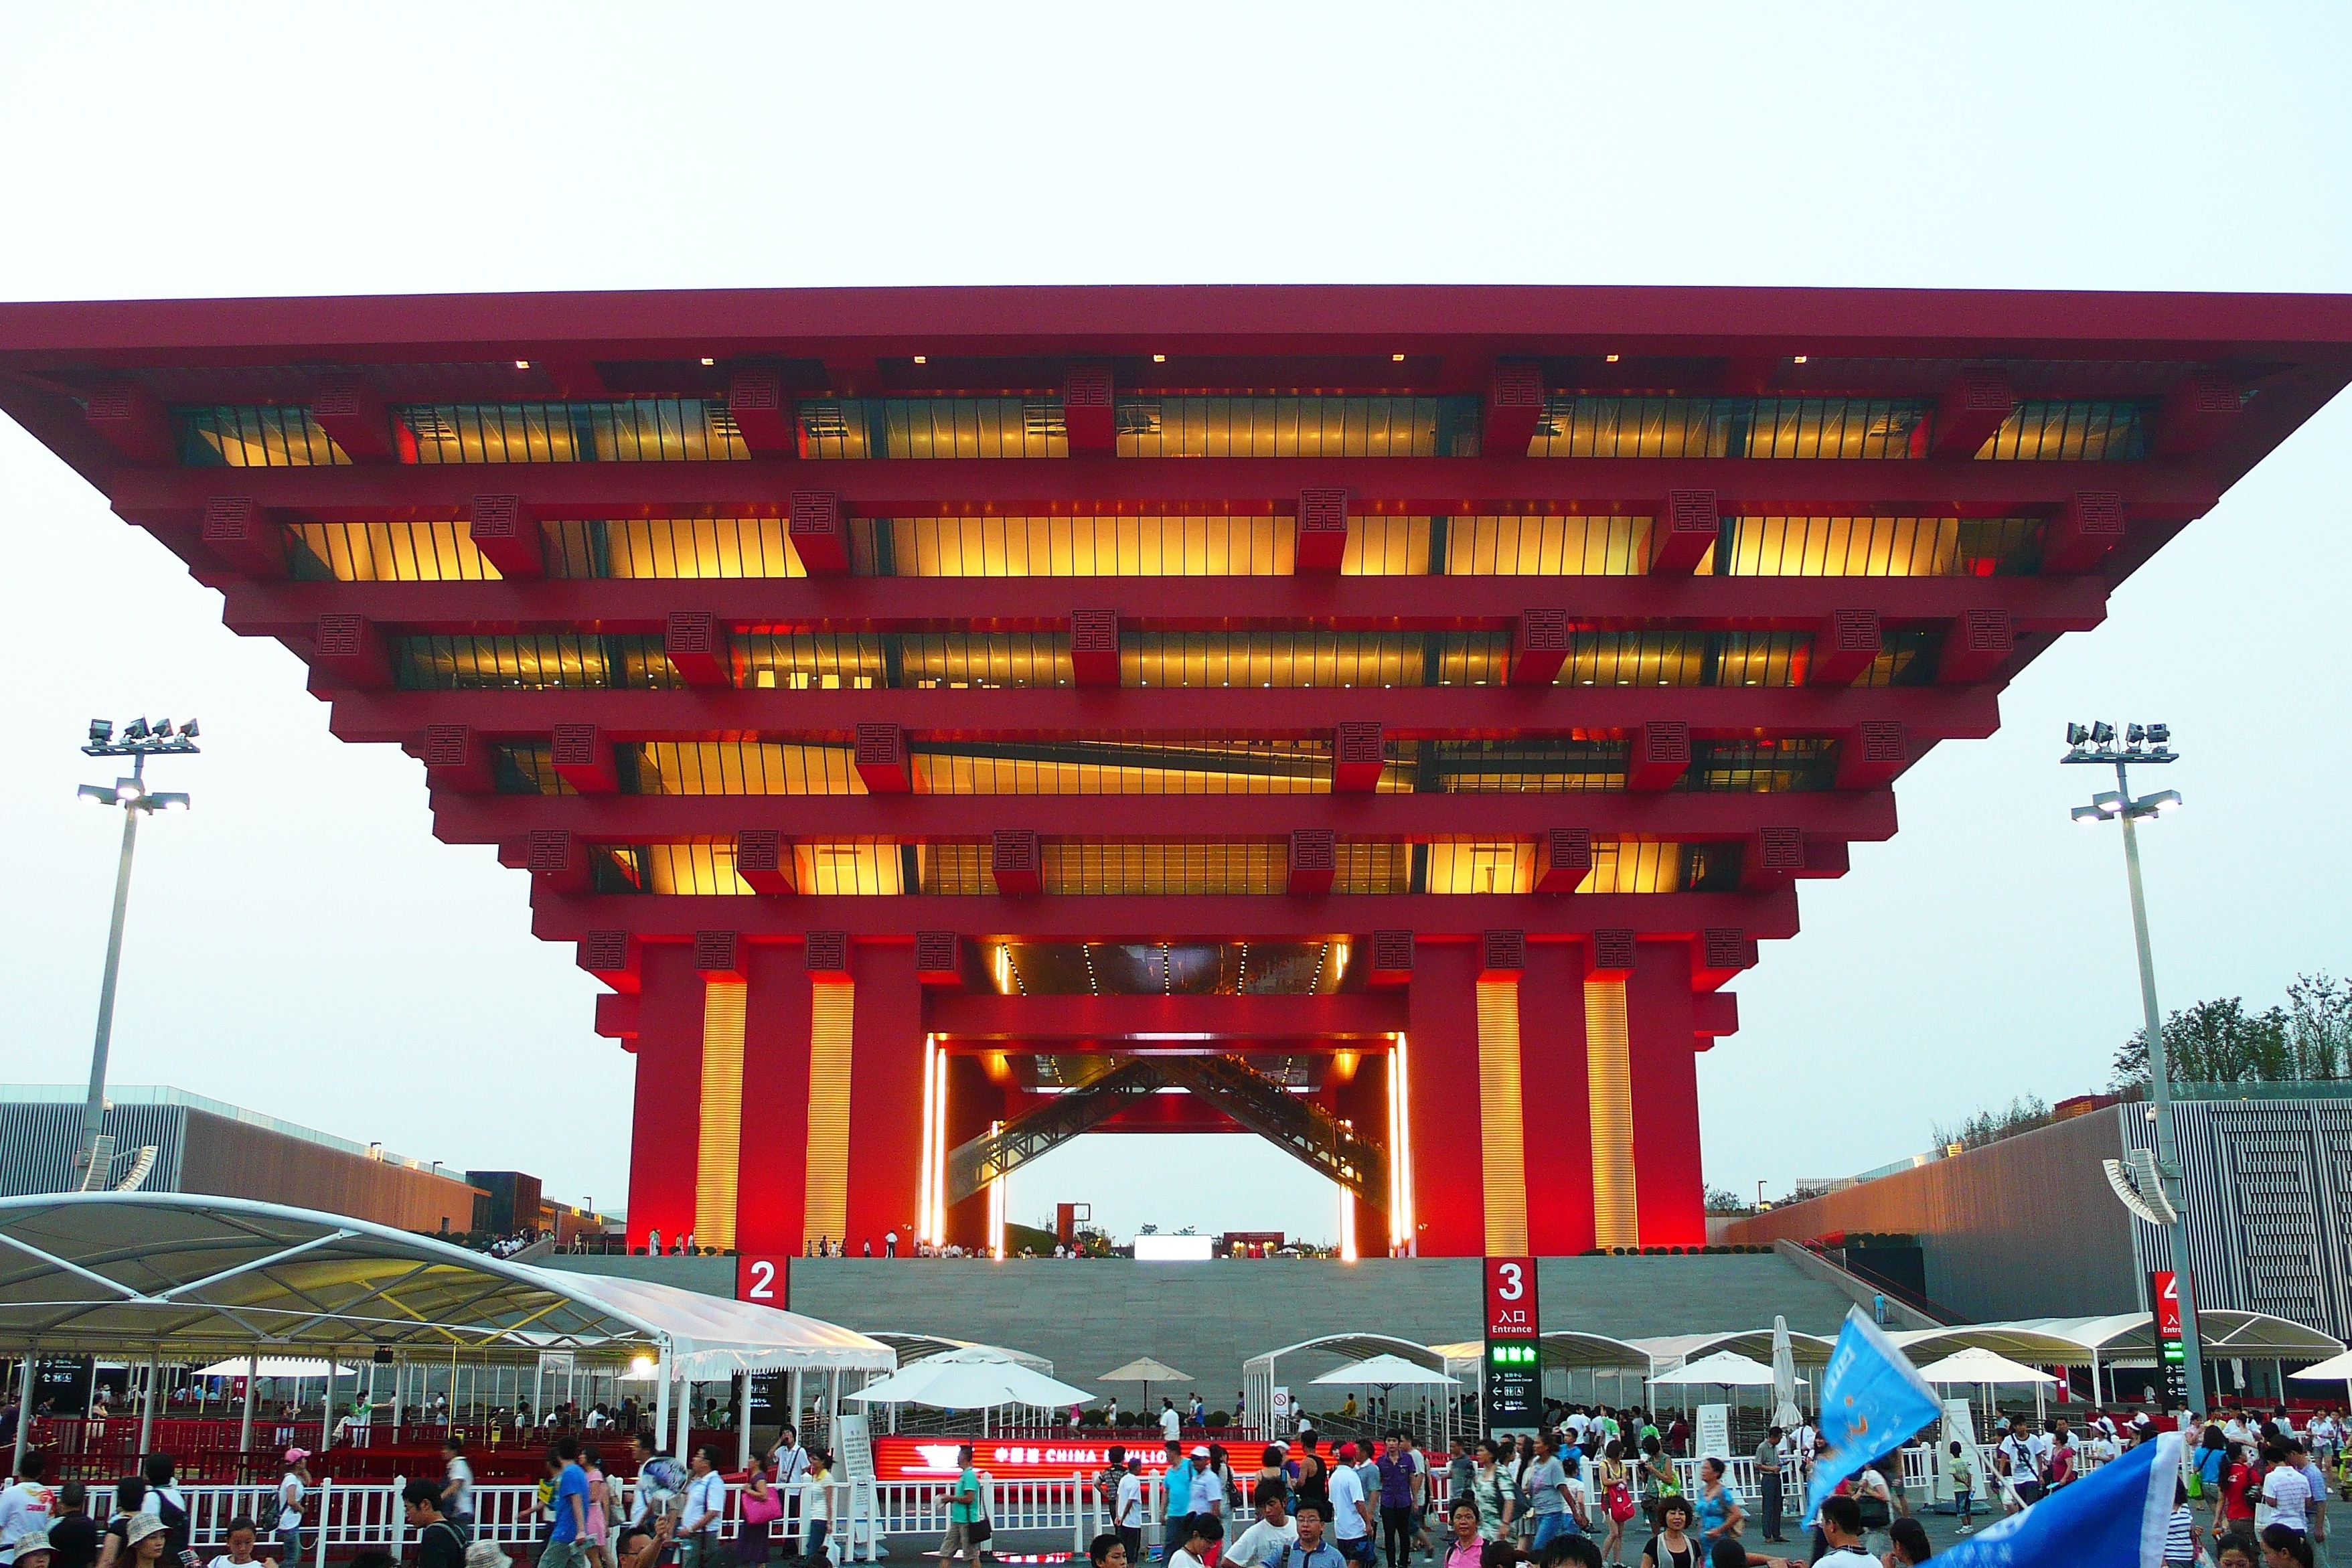 原创 城市,让生活更美好——回忆2010年上海世博会(下)